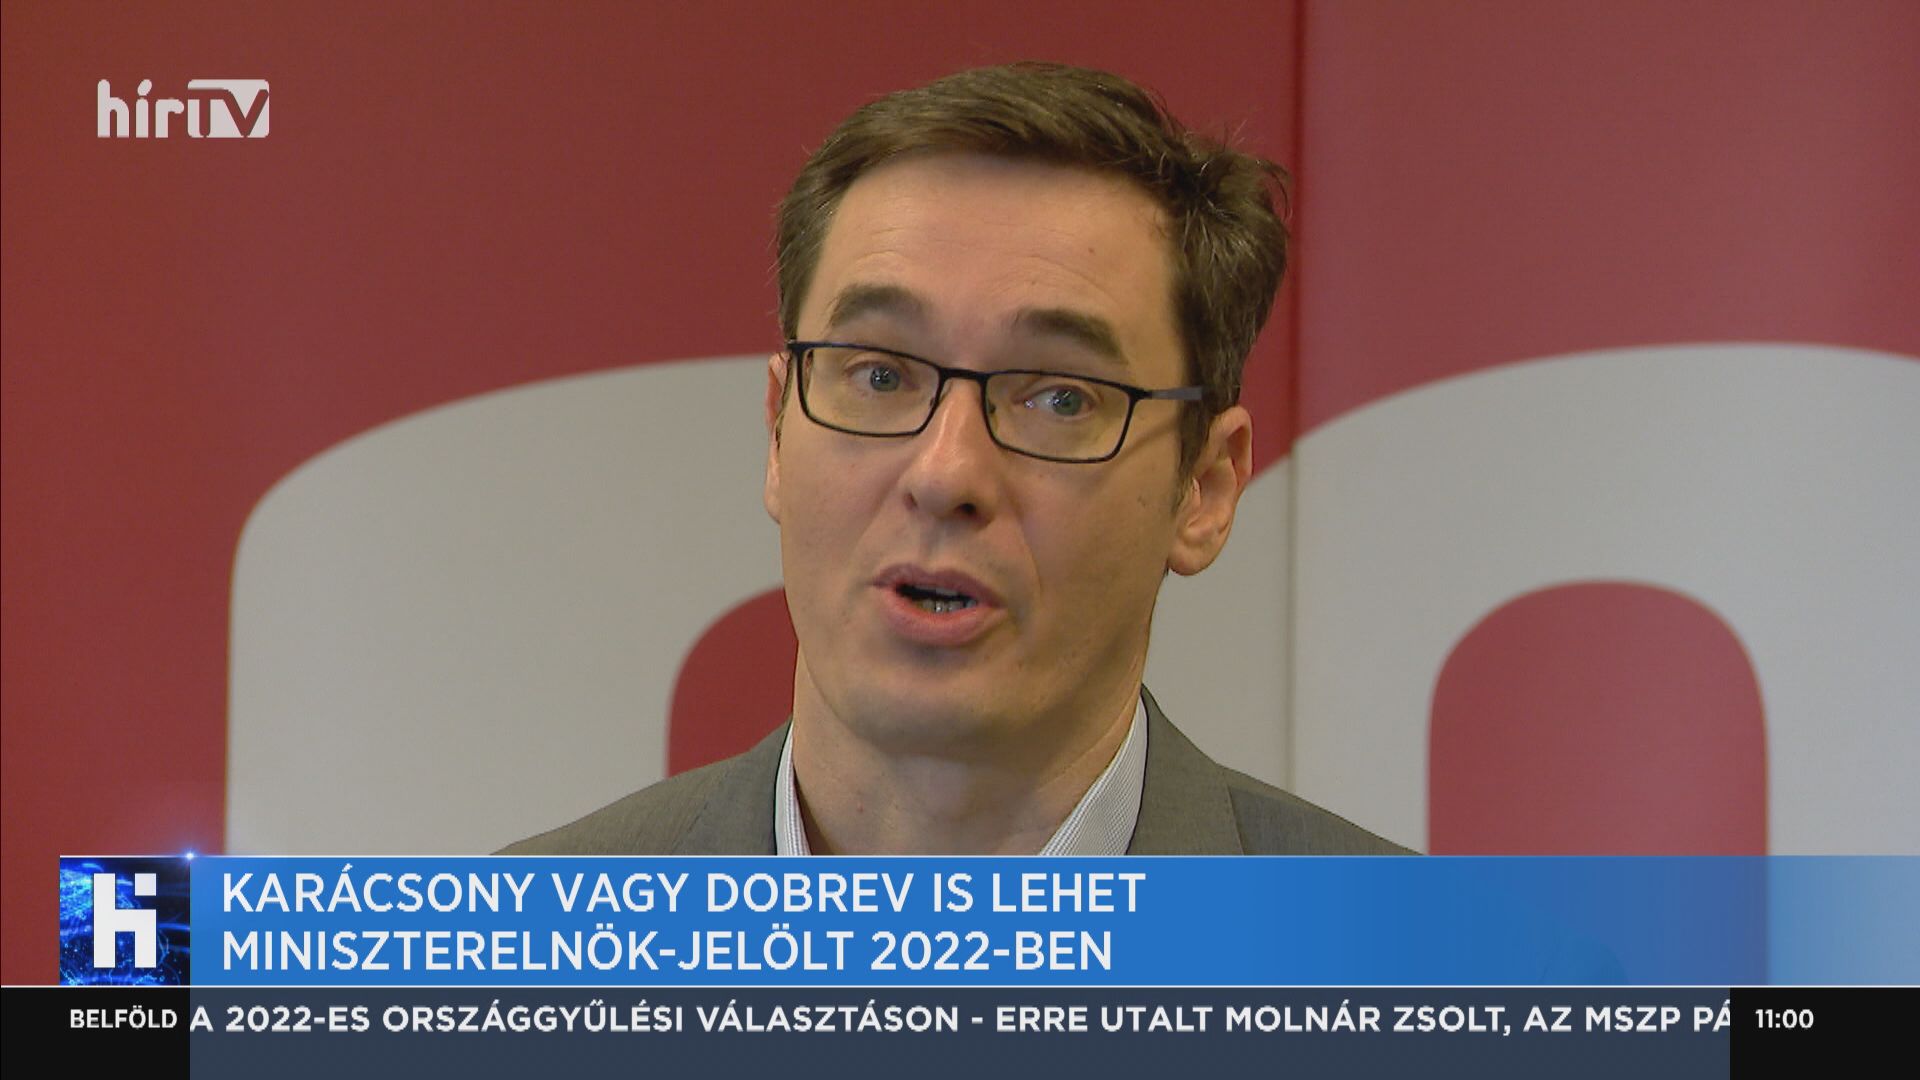 Karácsony vagy Dobrev is lehet miniszterelnök-jelölt 2022-ben